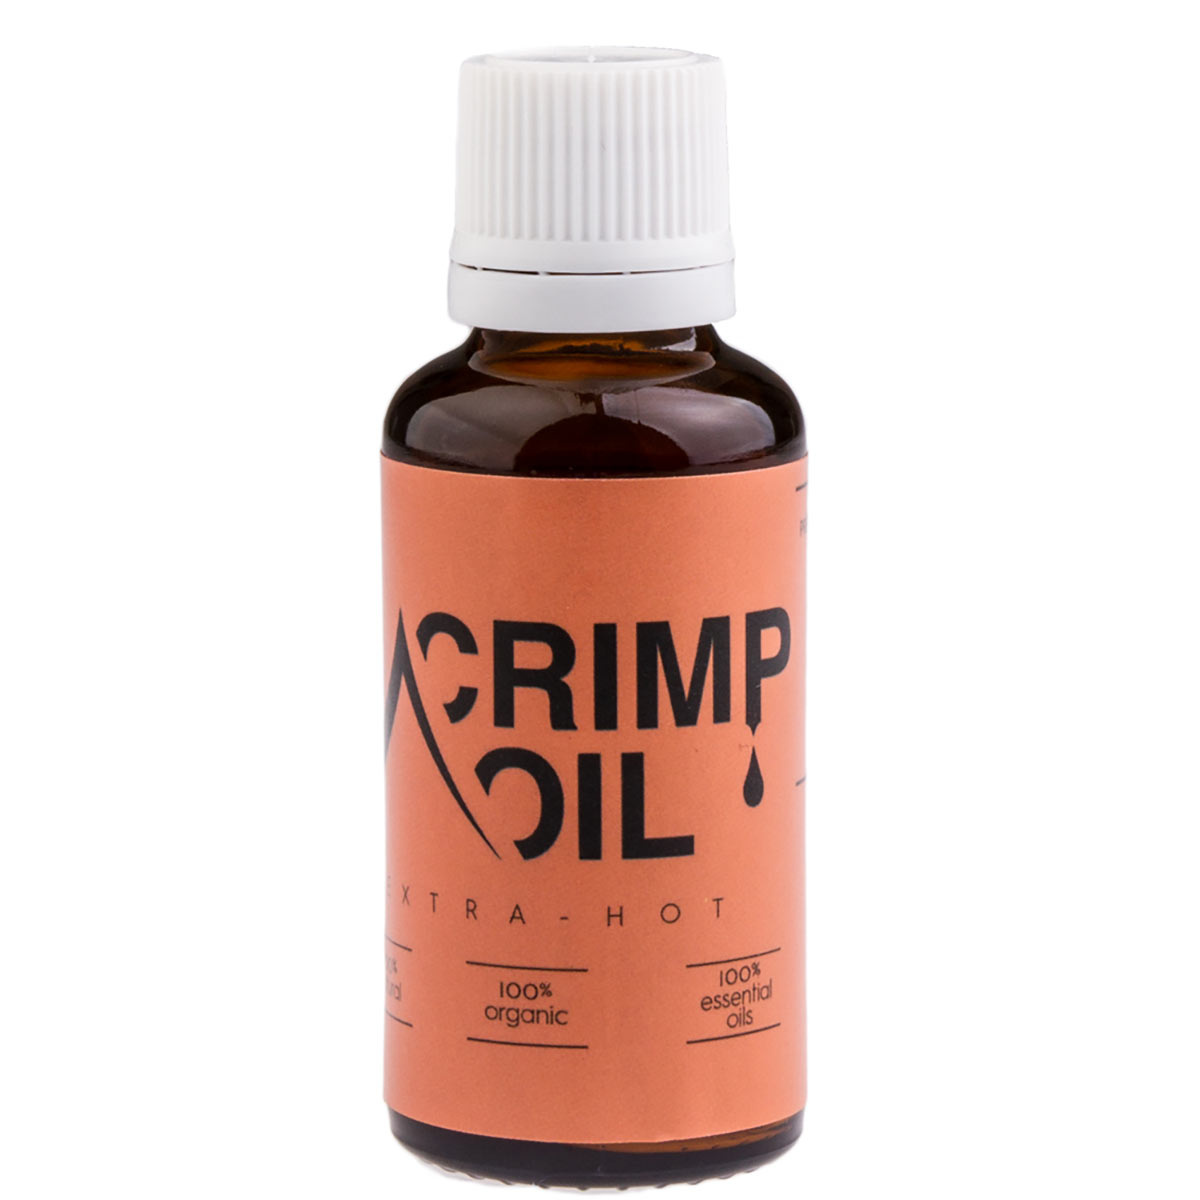 Image of Crimp Oil Crimp Oil Extra Hot